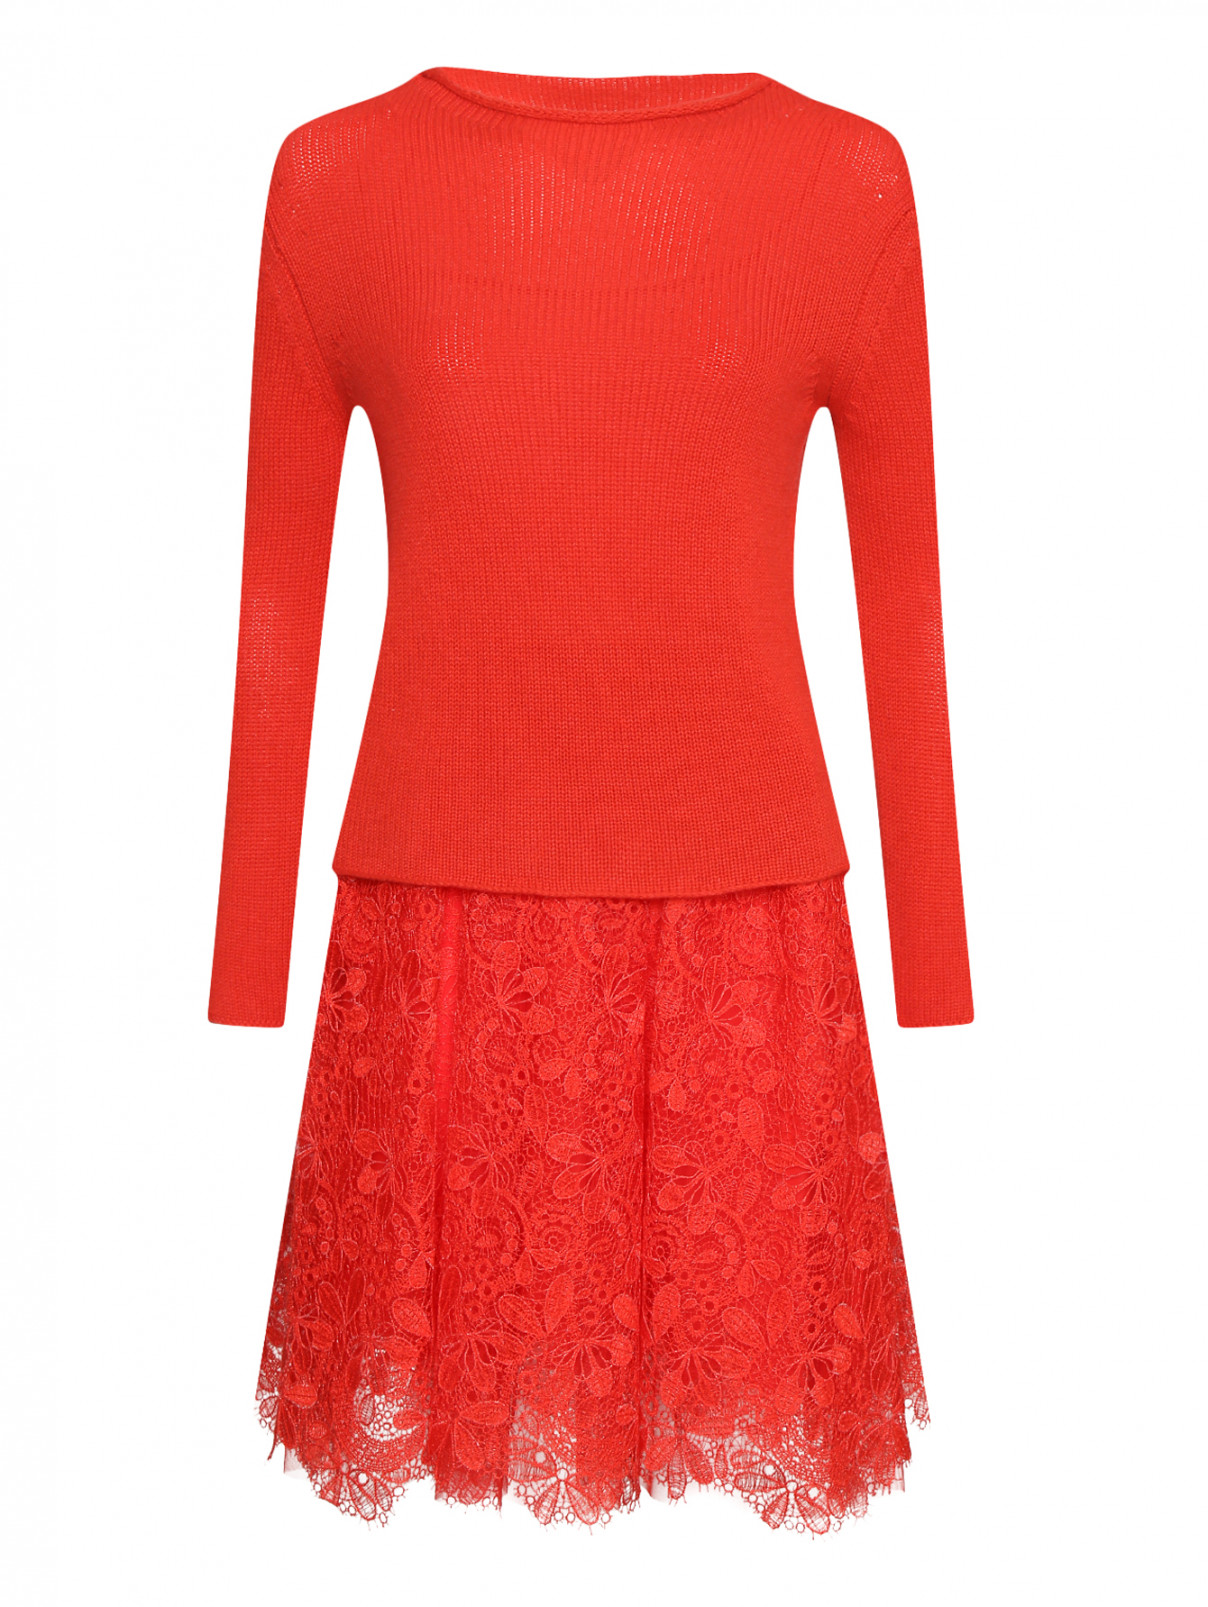 Комбинированное платье из кашемира  ,шелка и кружева Ermanno Scervino  –  Общий вид  – Цвет:  Красный